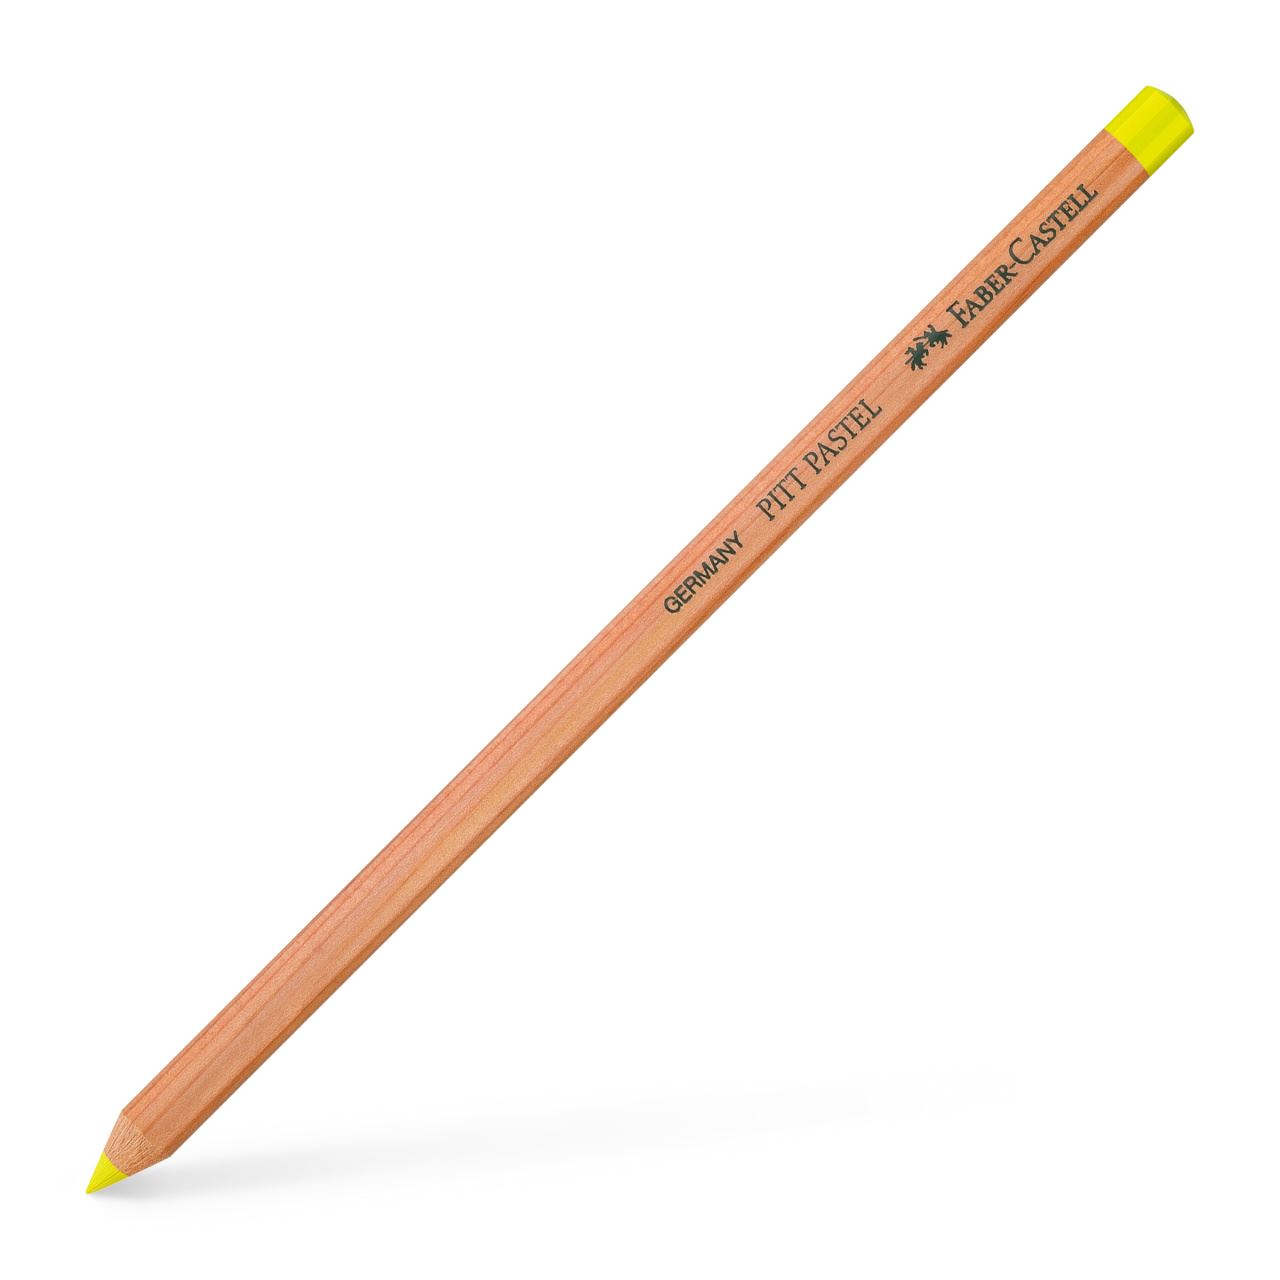 Faber-Castell - Pitt Pastel pencil, light yellow glaze